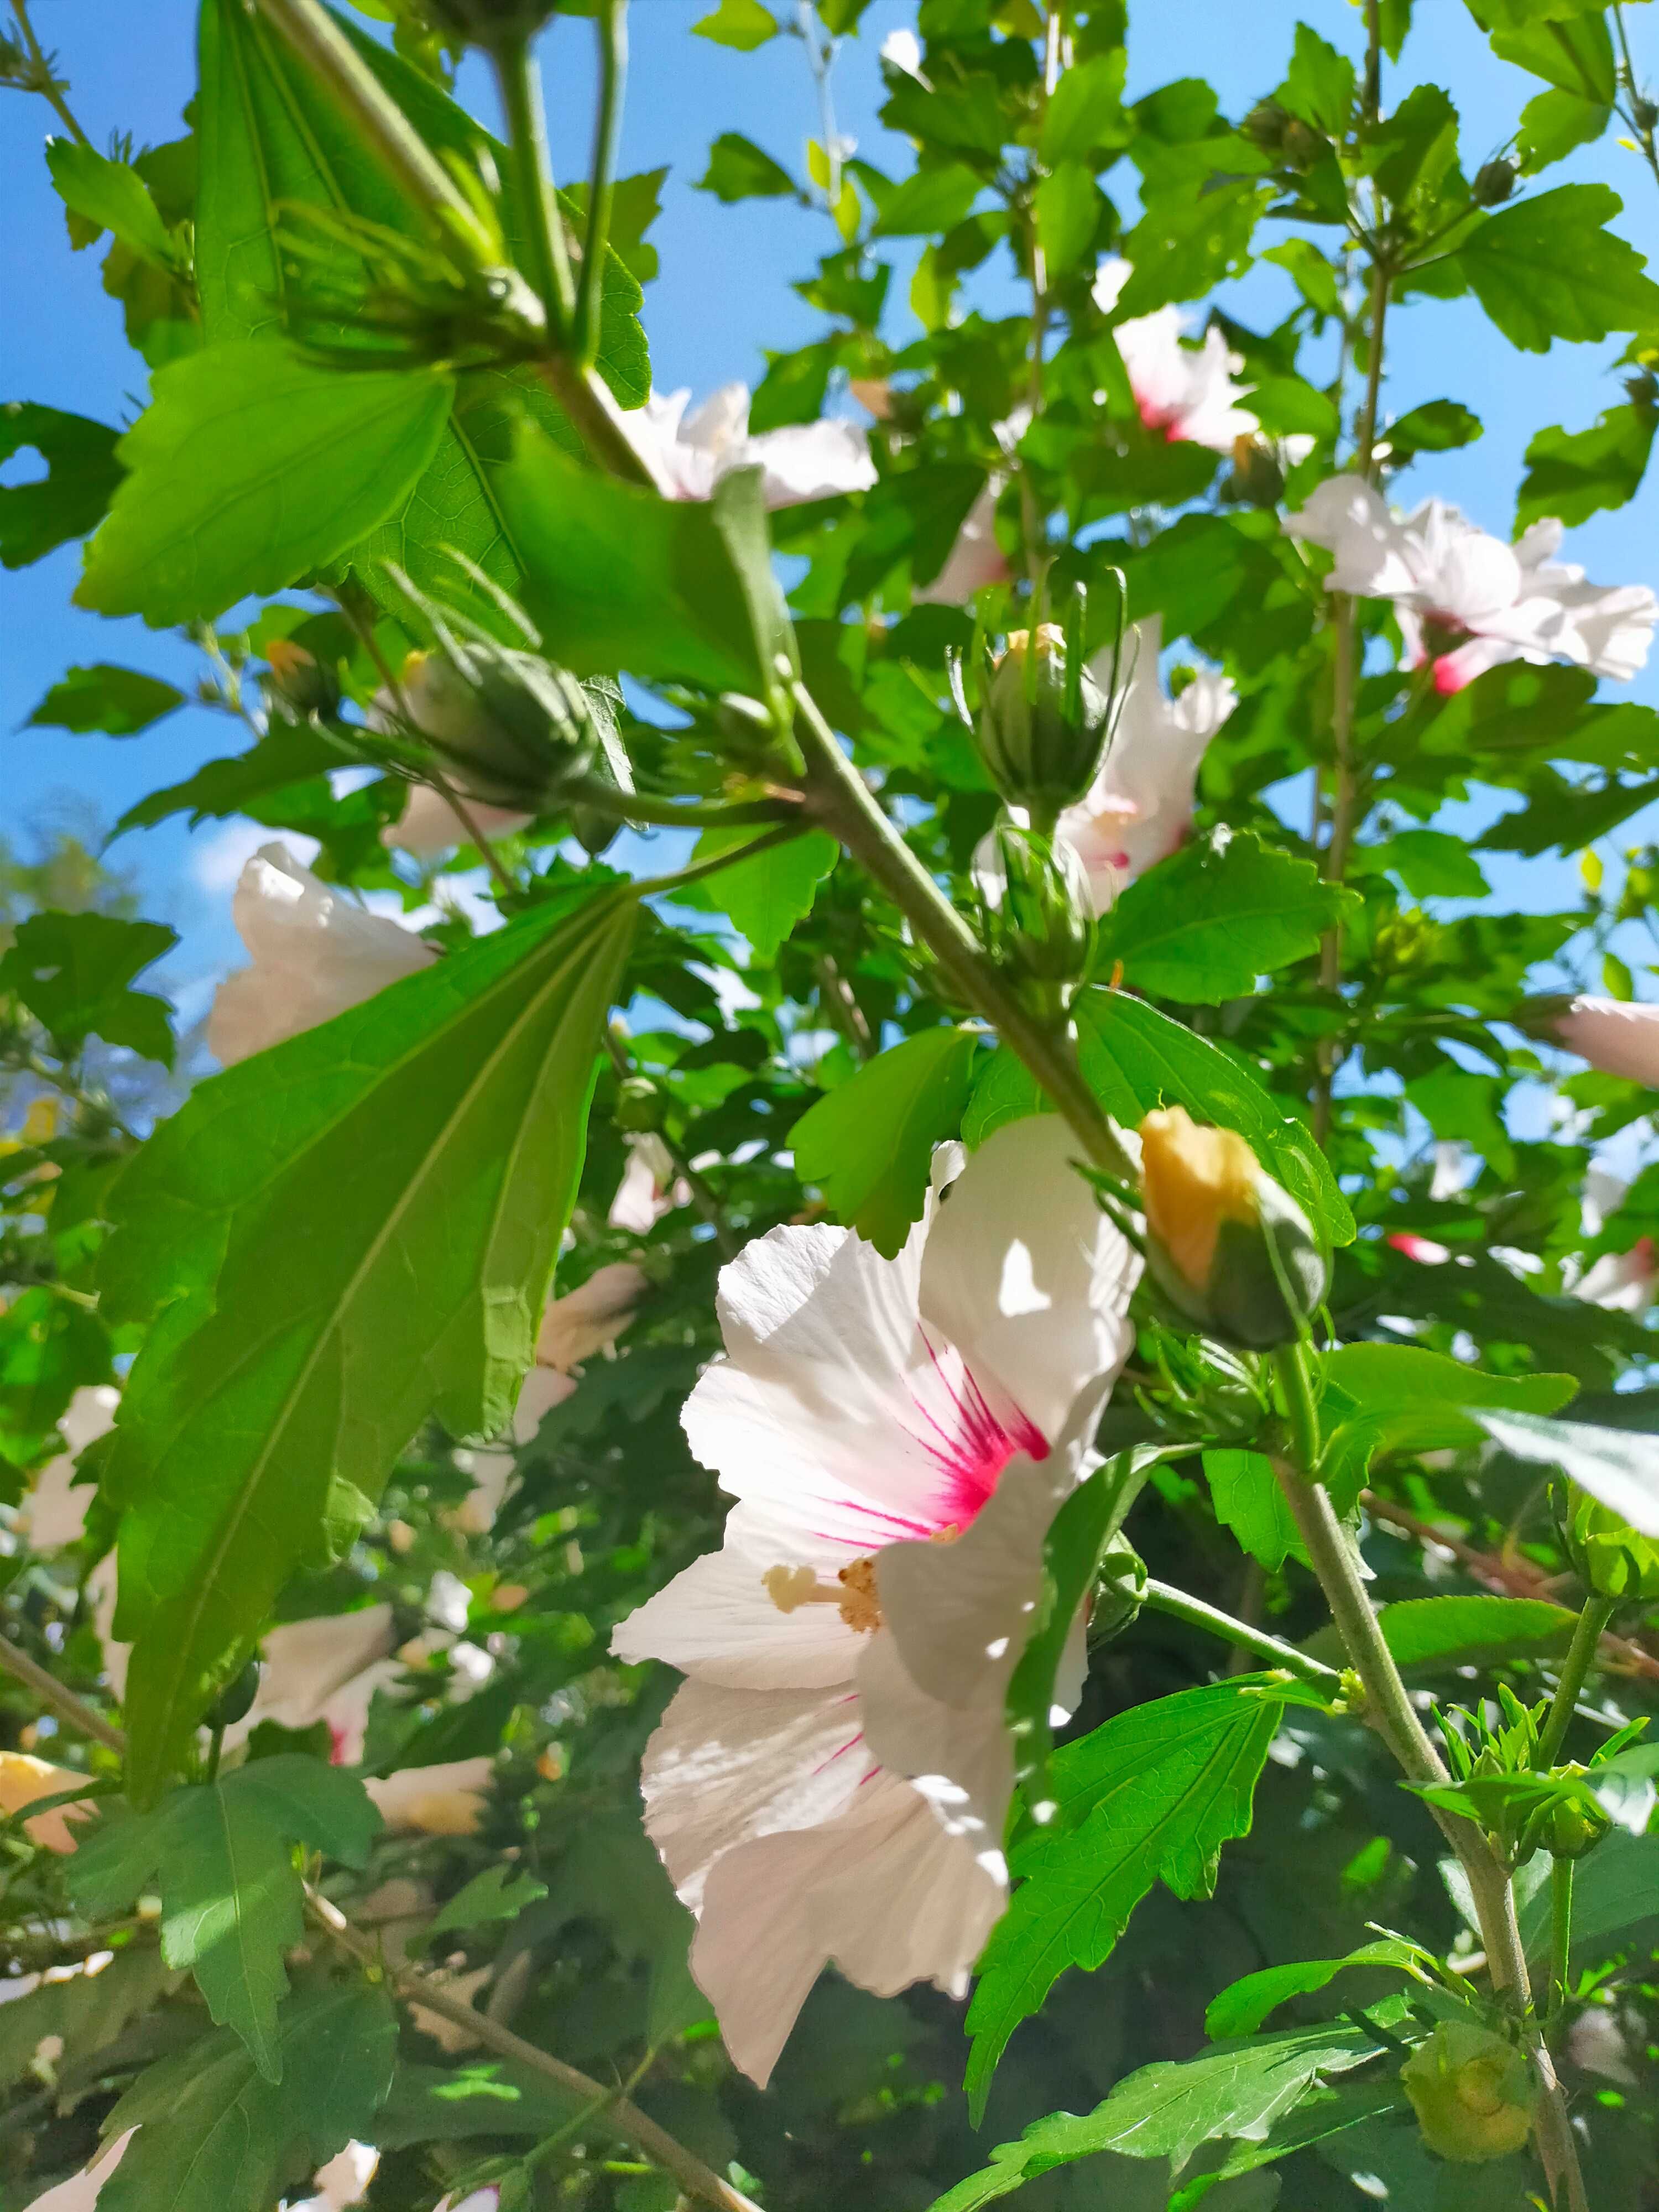 Hibiskus, ketmia, róża chińska ładne sadzonki w donicach lub z gruntu.